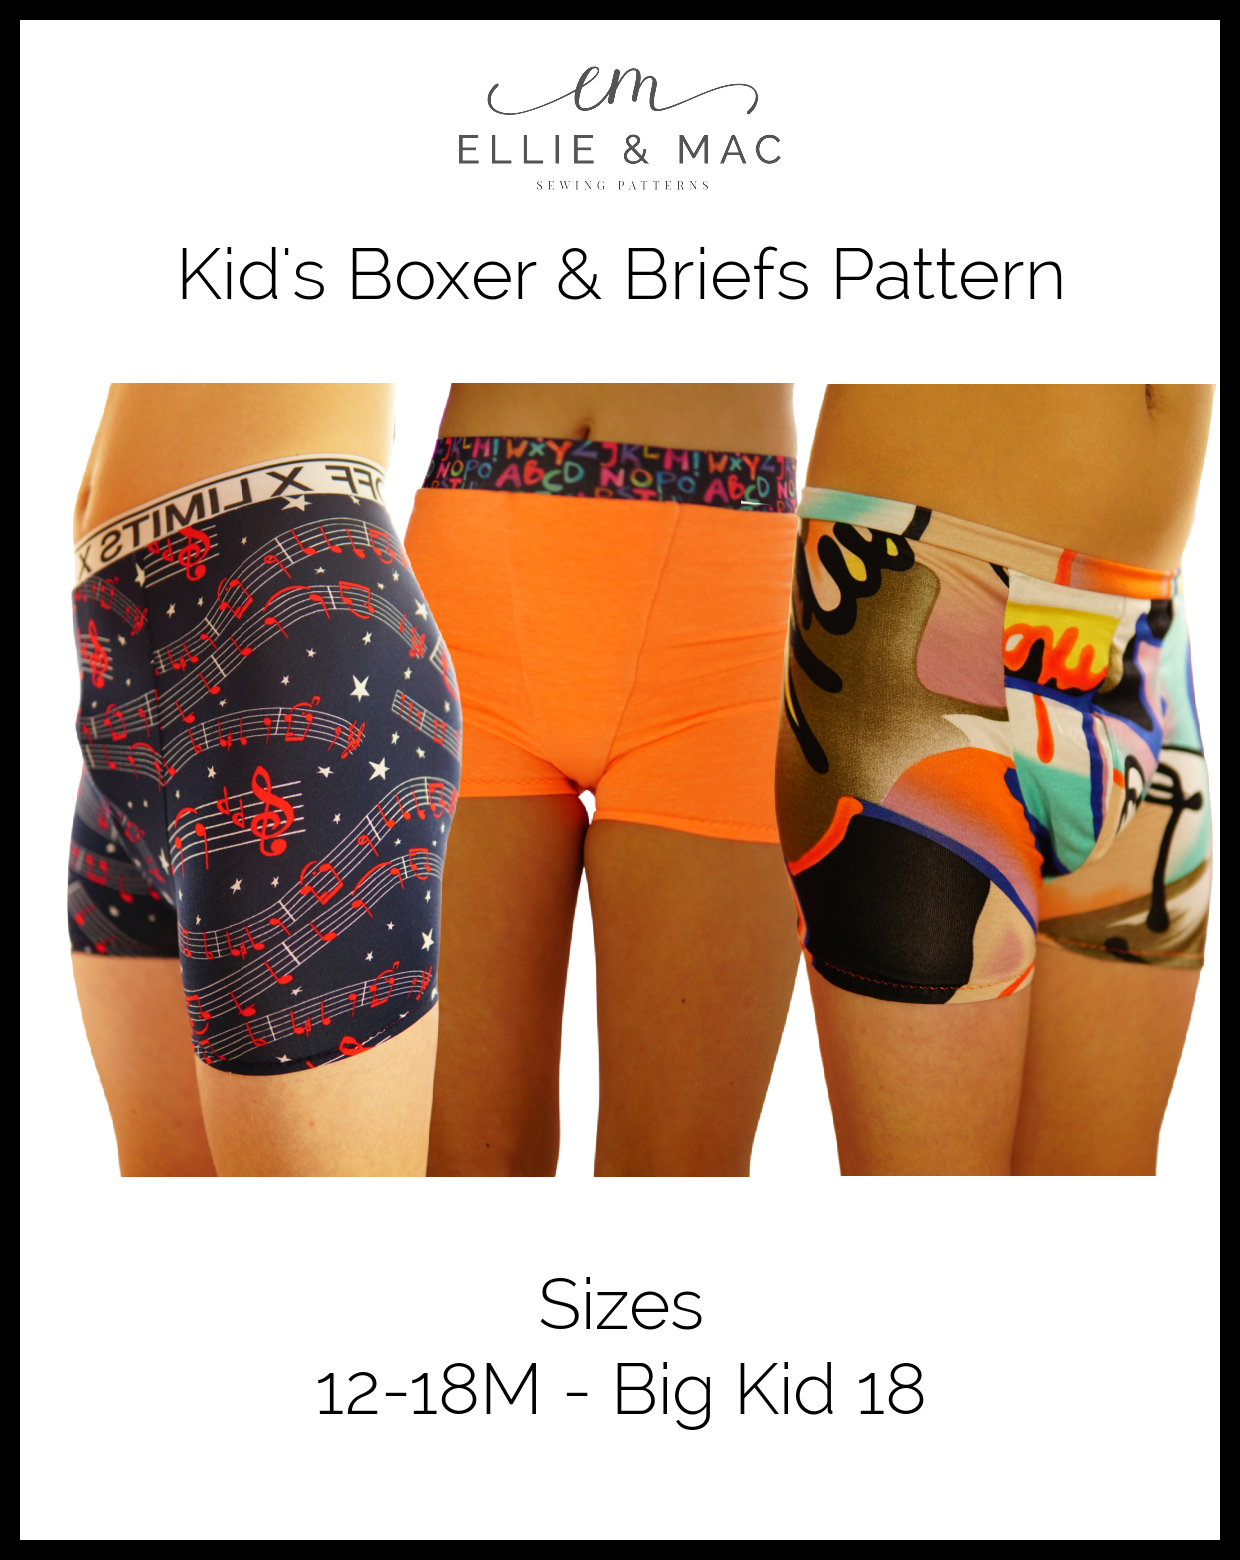 NEW Power Boy Briefs Underwear PDF Pattern & Online Class